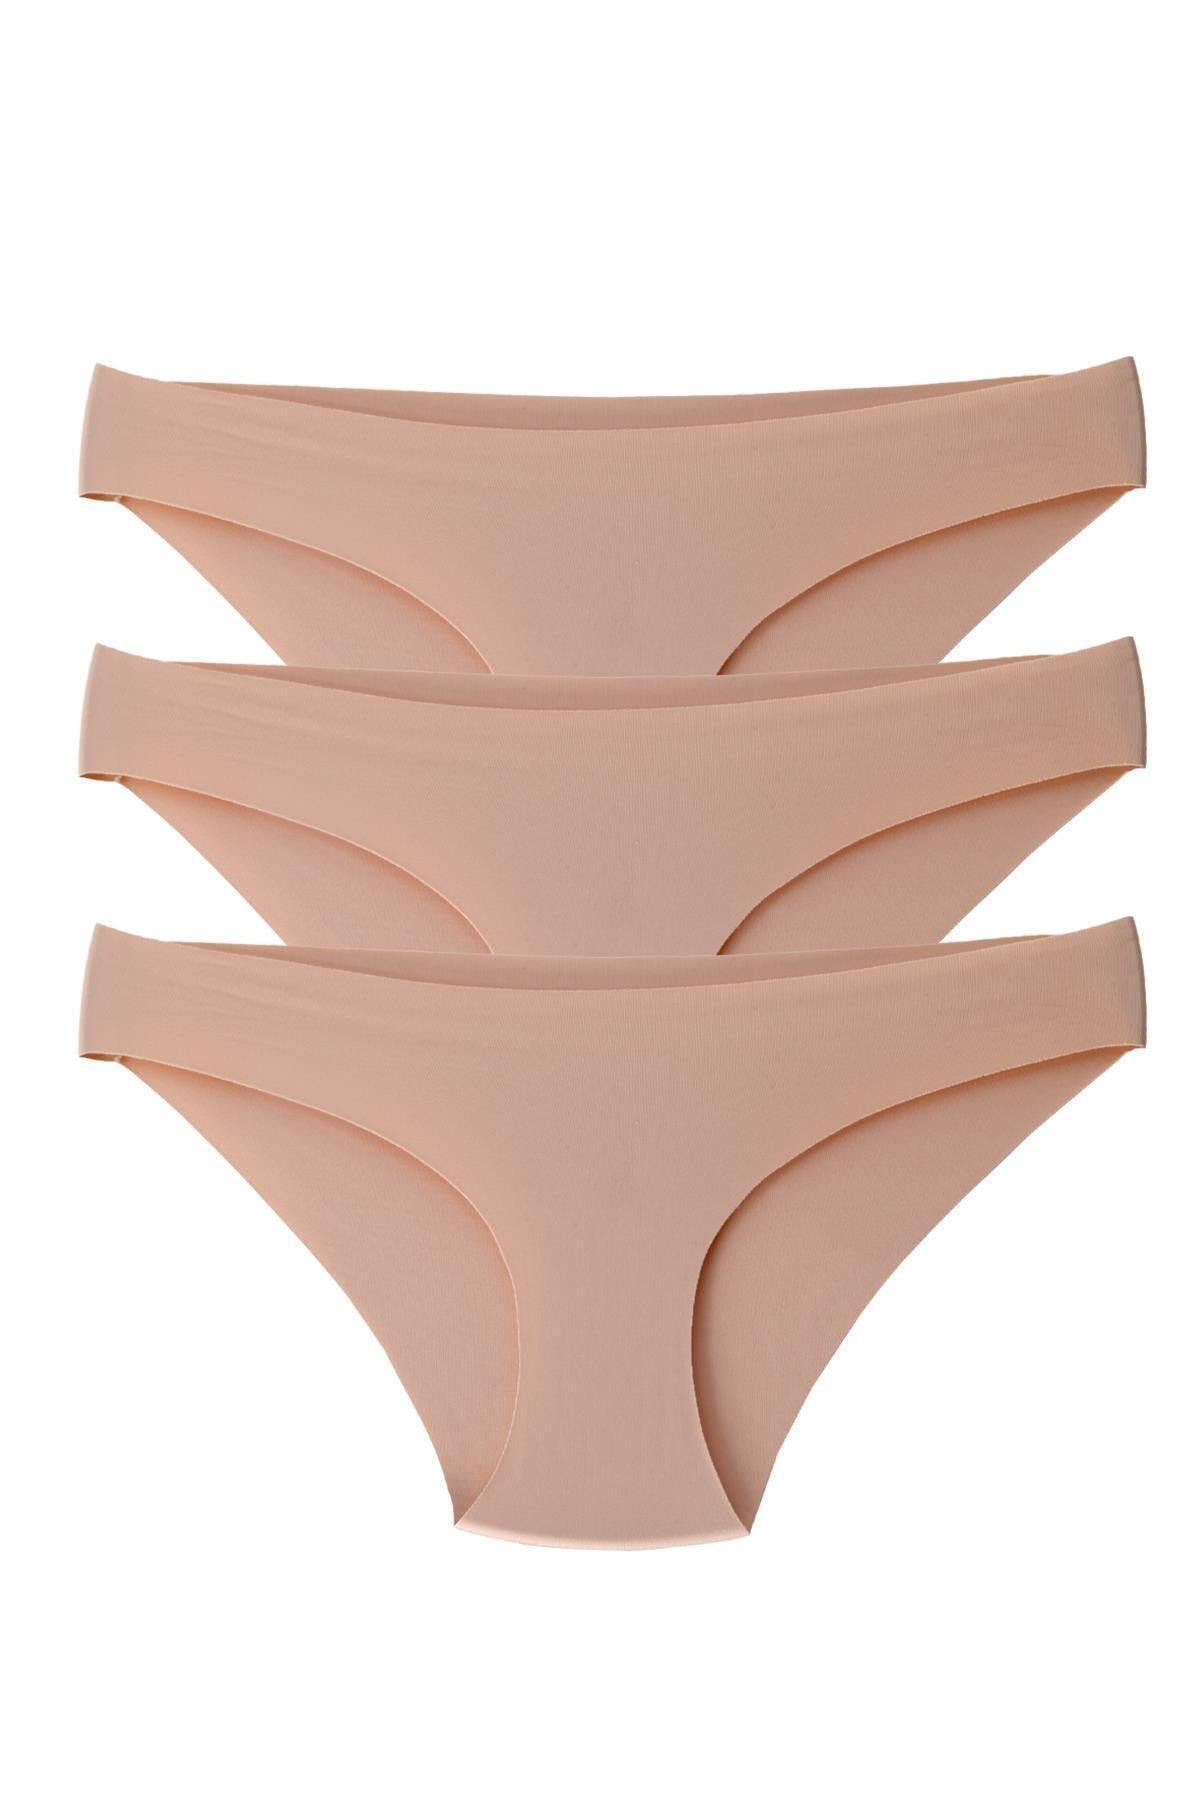 Merry Secret's Kadın 3'lü Paket Lazer Kesim Panty Slip Külot 14 Şubat ,sevgililer Günü, Hediyelik